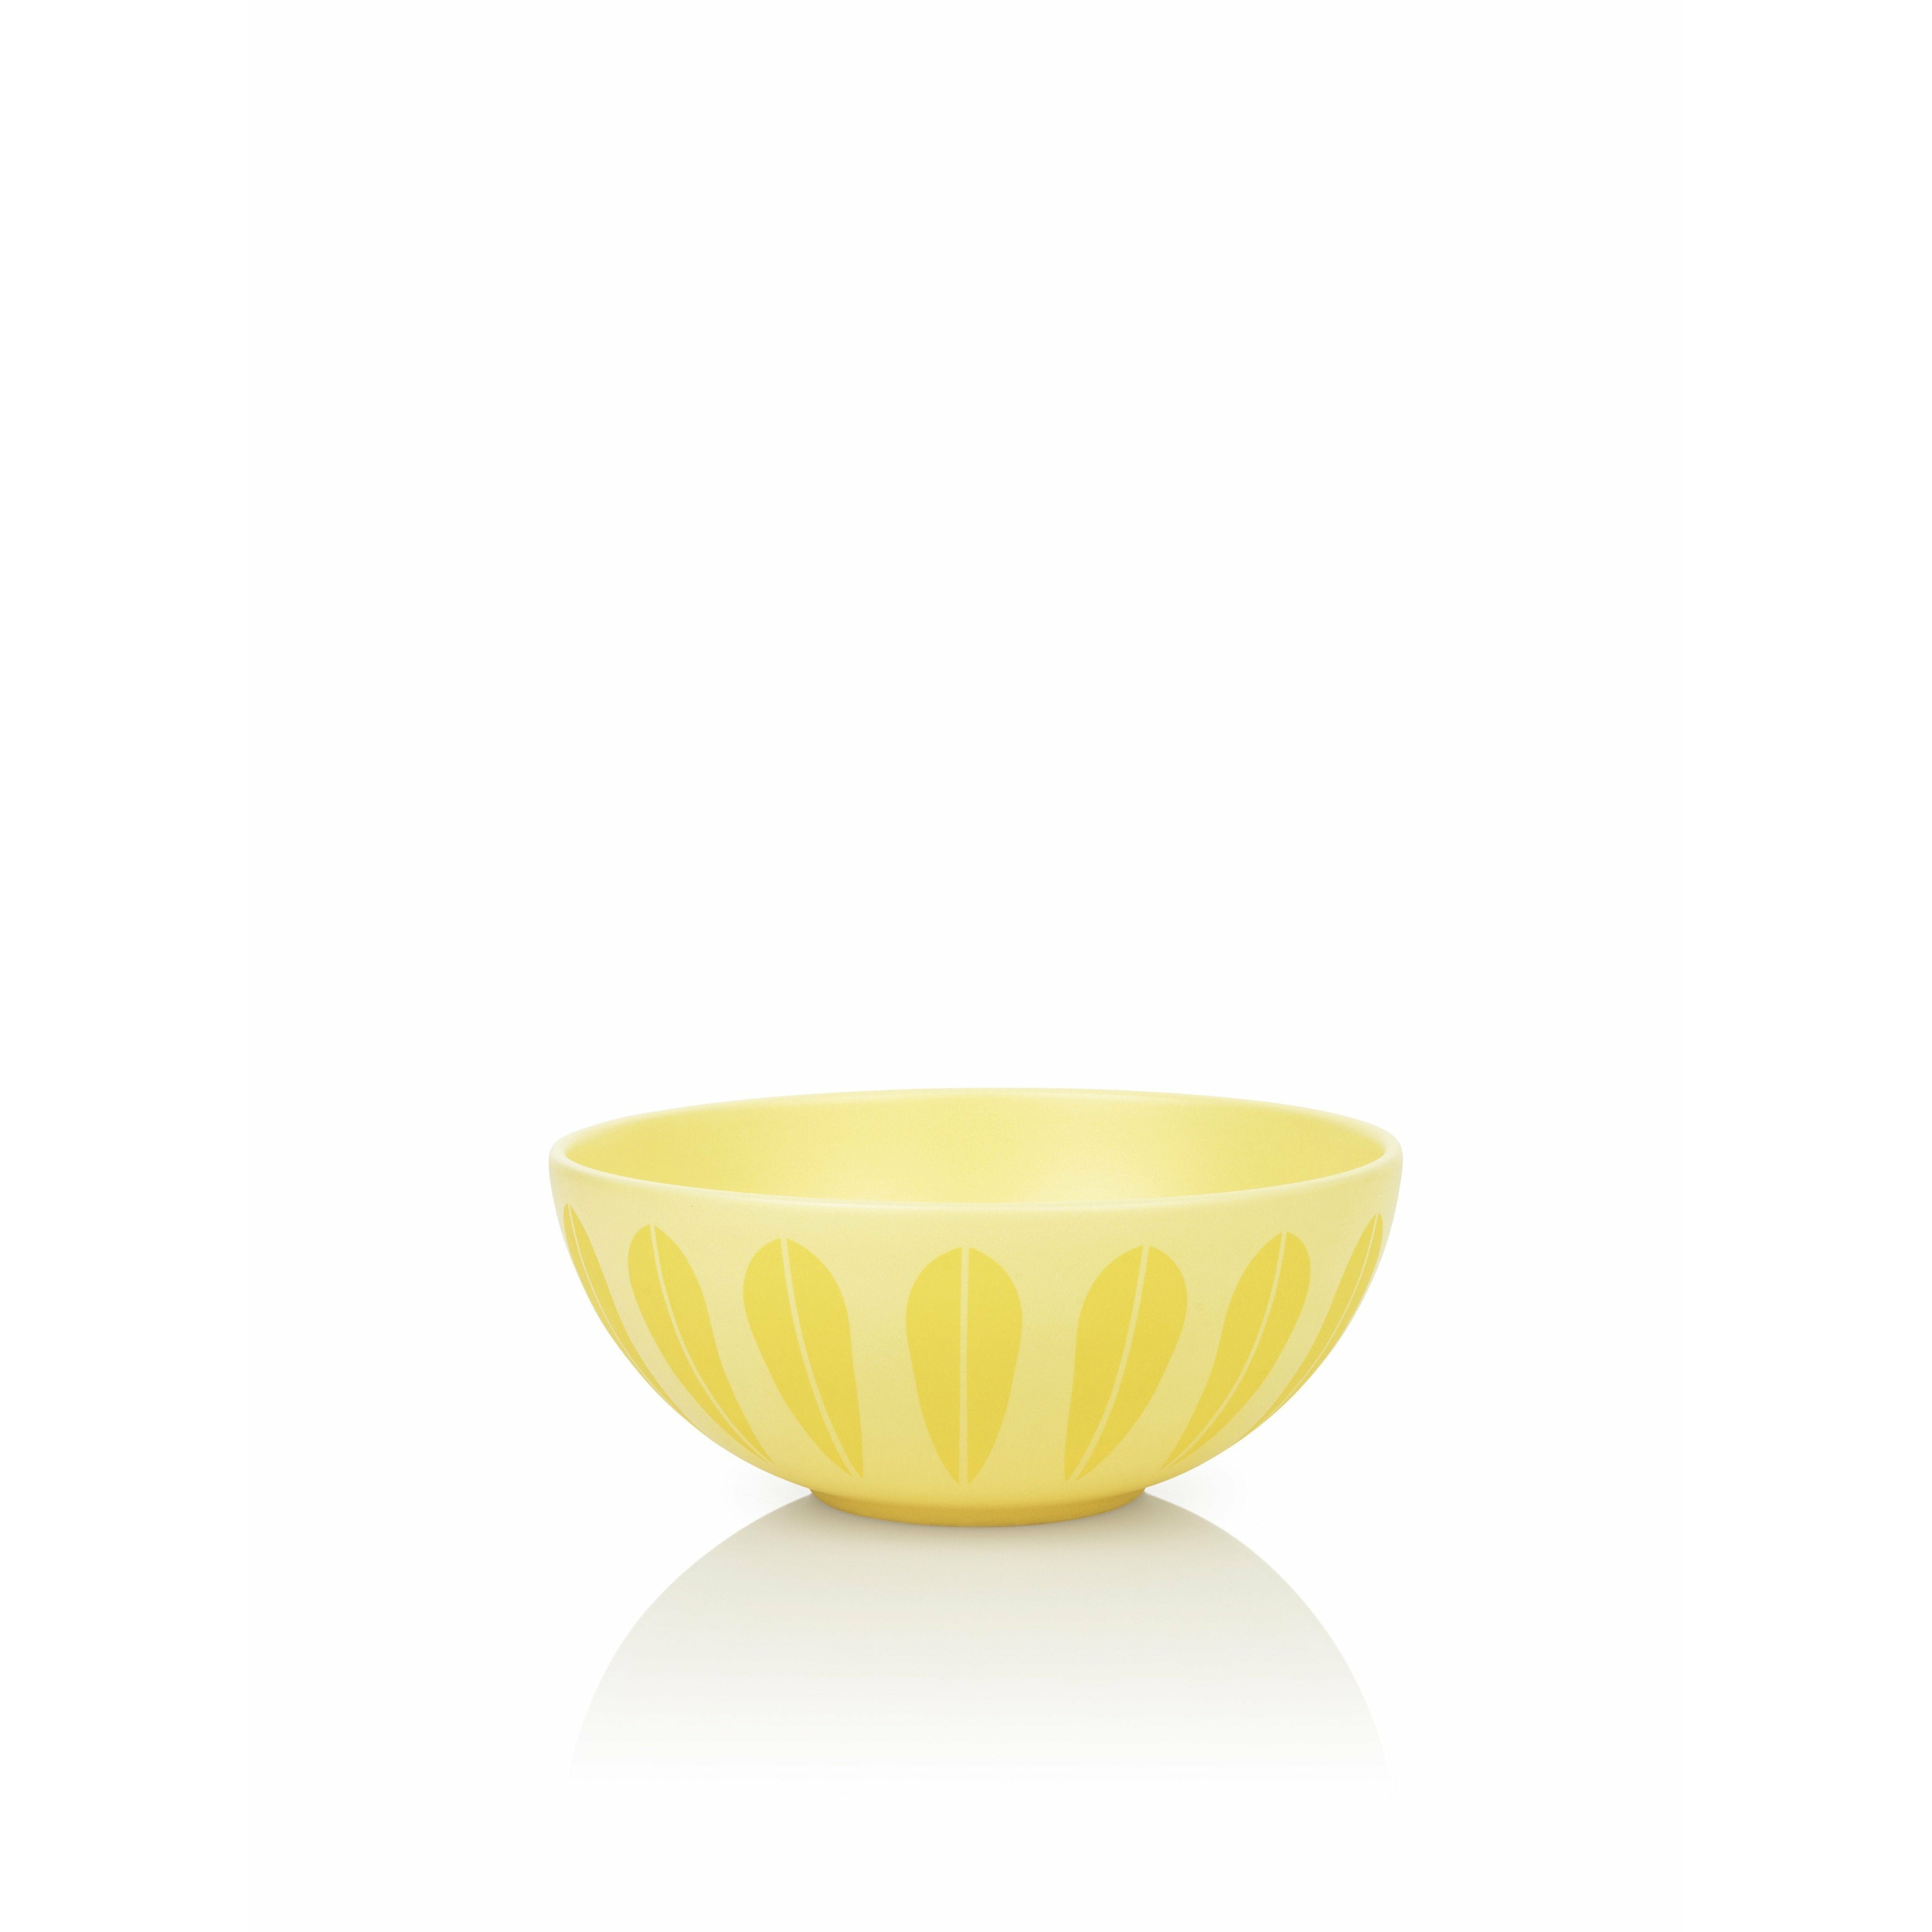 Lucie Kaas Arne Clausen Yellow Lotus Bowl, Ø24 cm